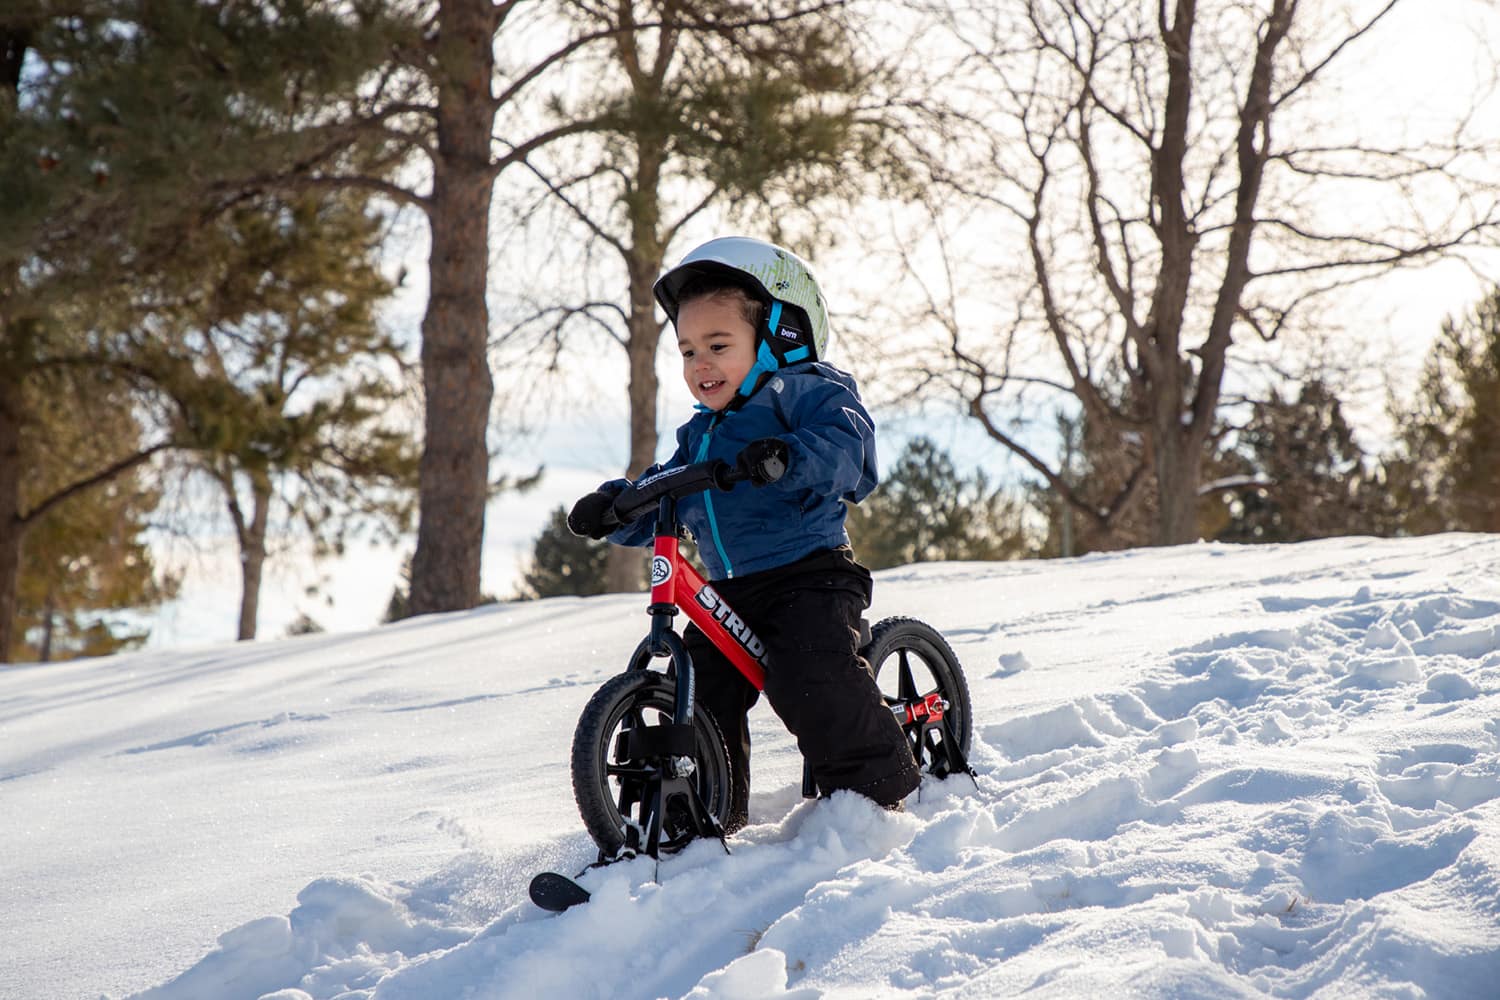 A boy on a red Strider bike skis down a snowy hill